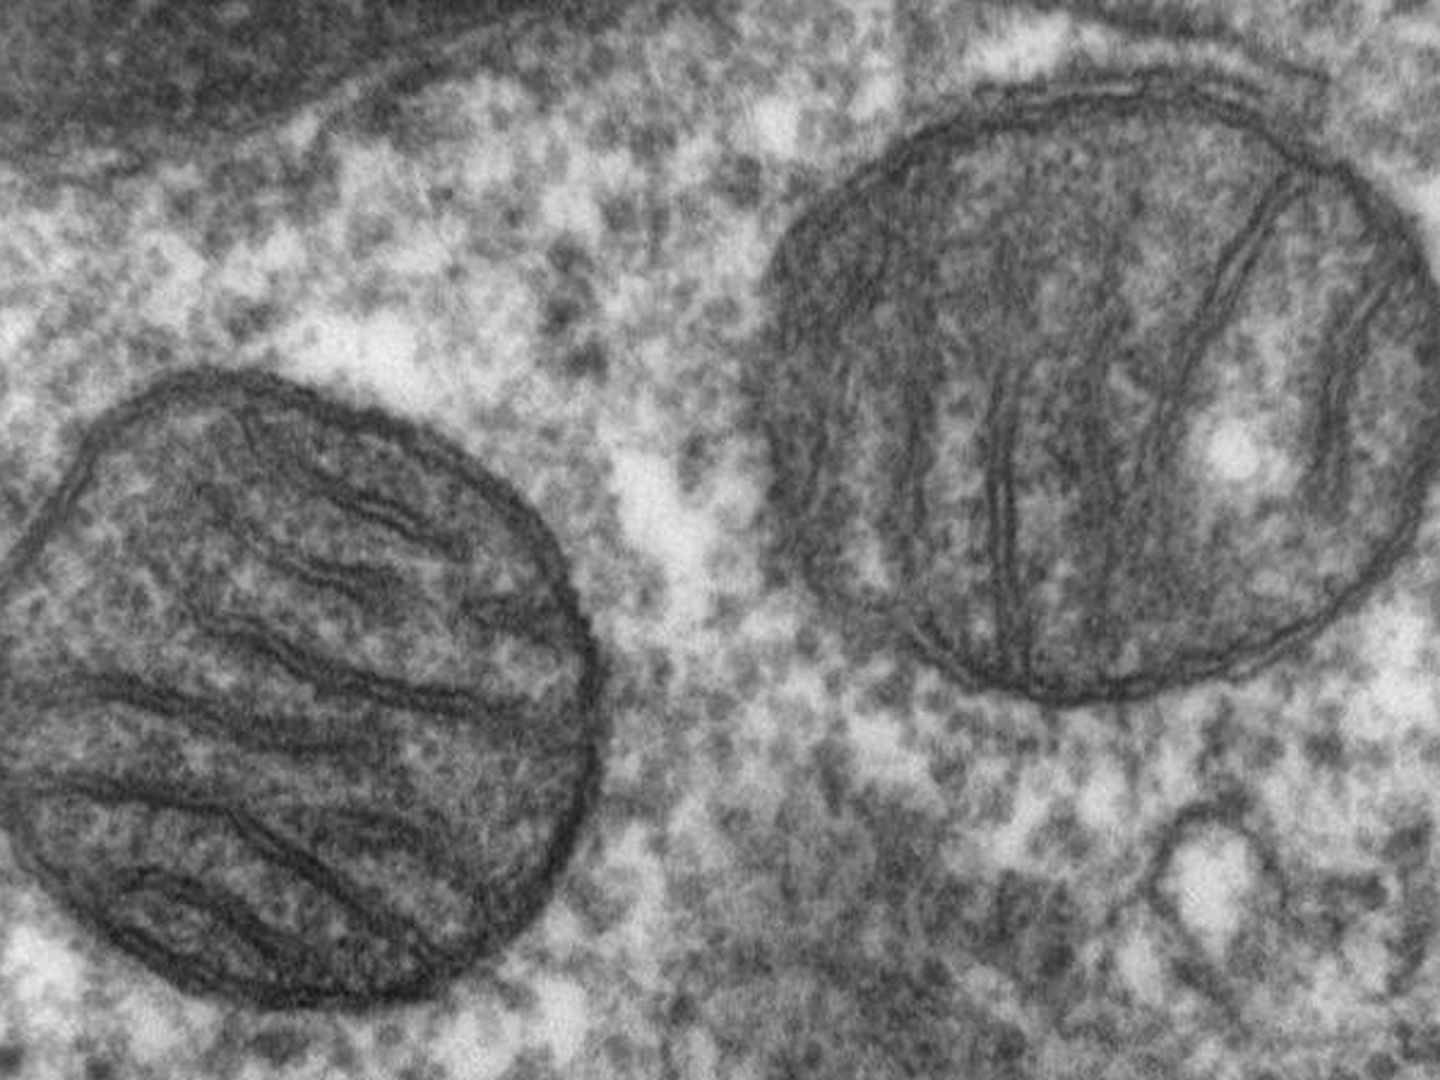 Dos mitocondrias, al microscopio. (Wikipedia)